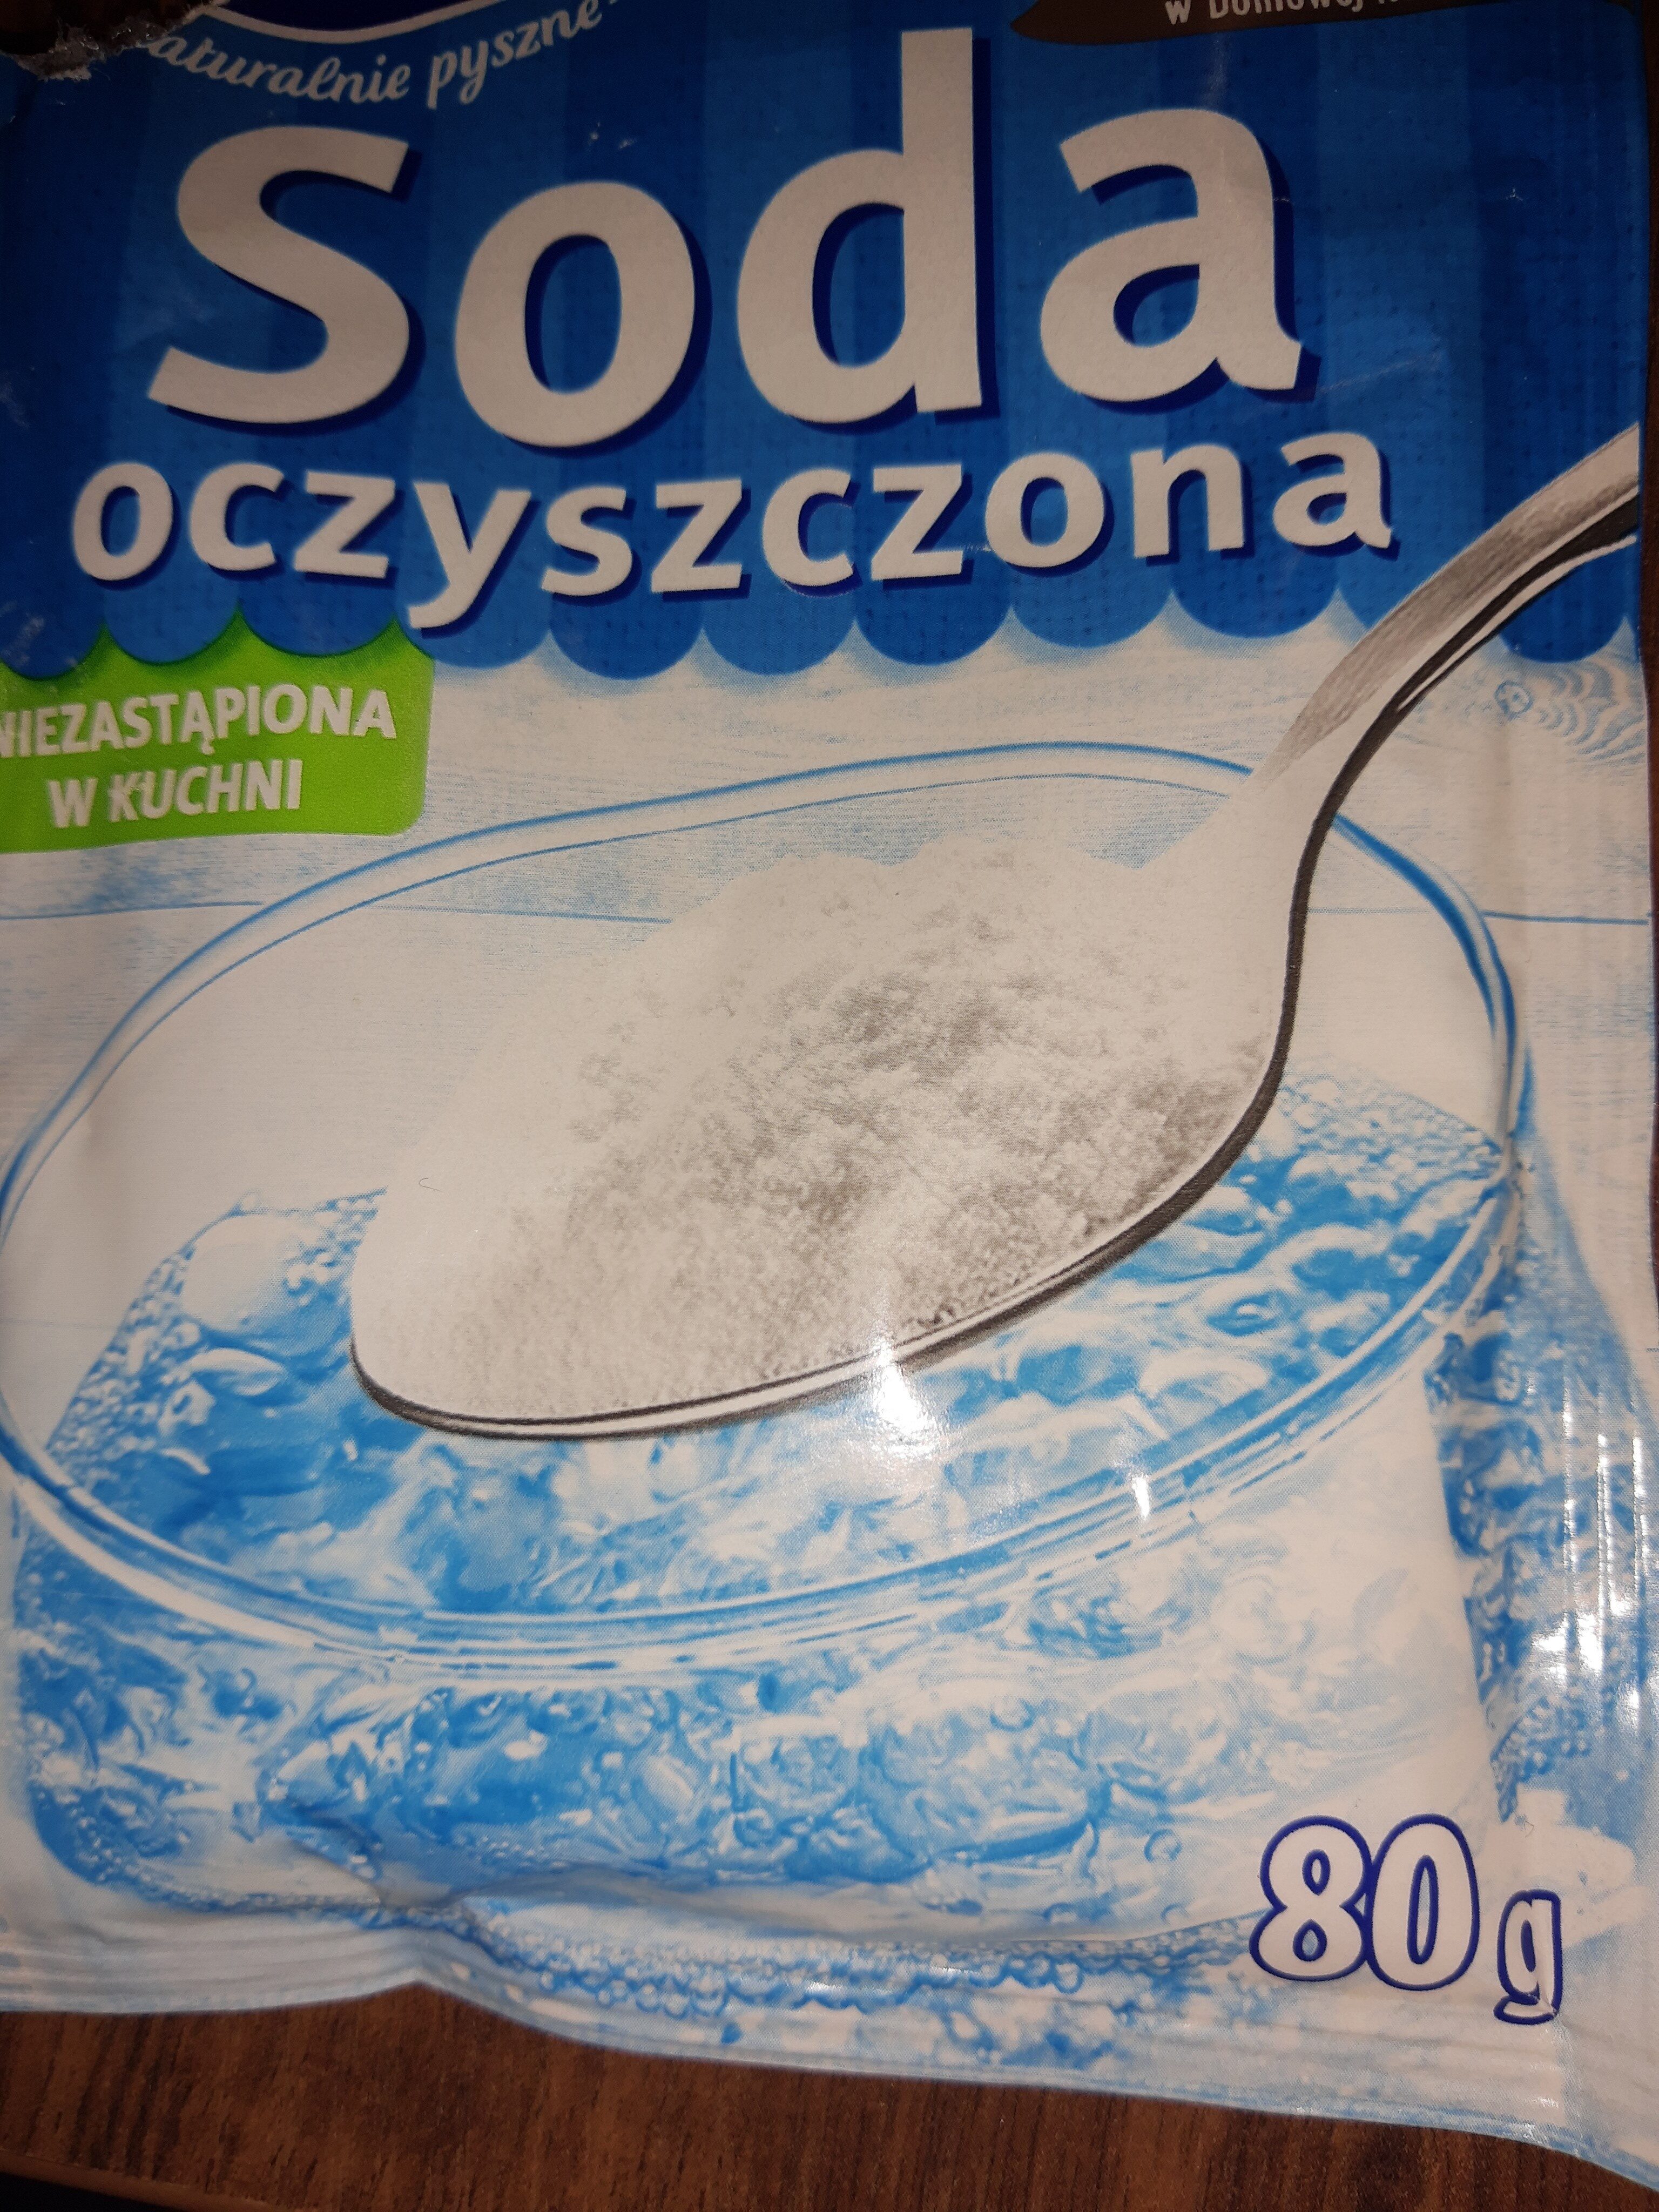 Soda Oczyszczona - Product